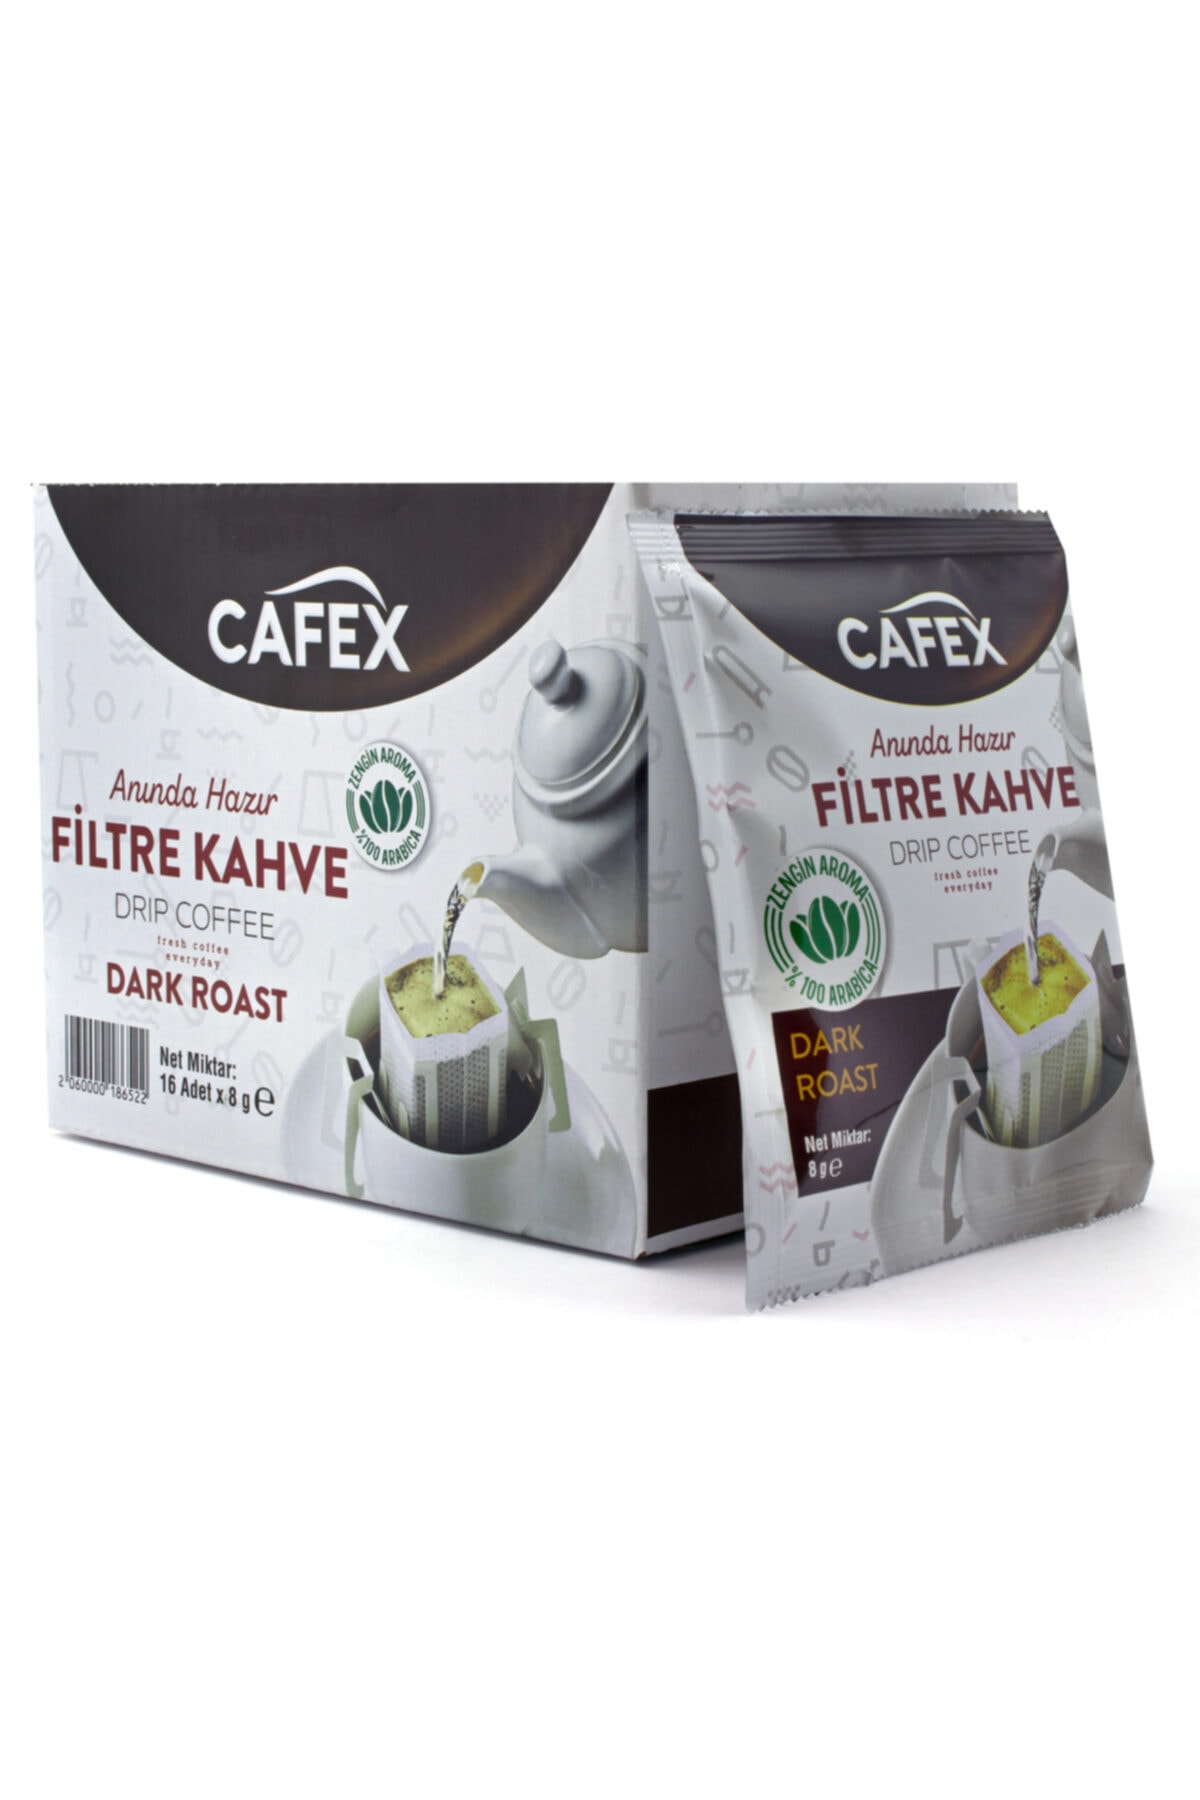 CAFEX Filtre Kahve 16 Adet 8 gr x 16